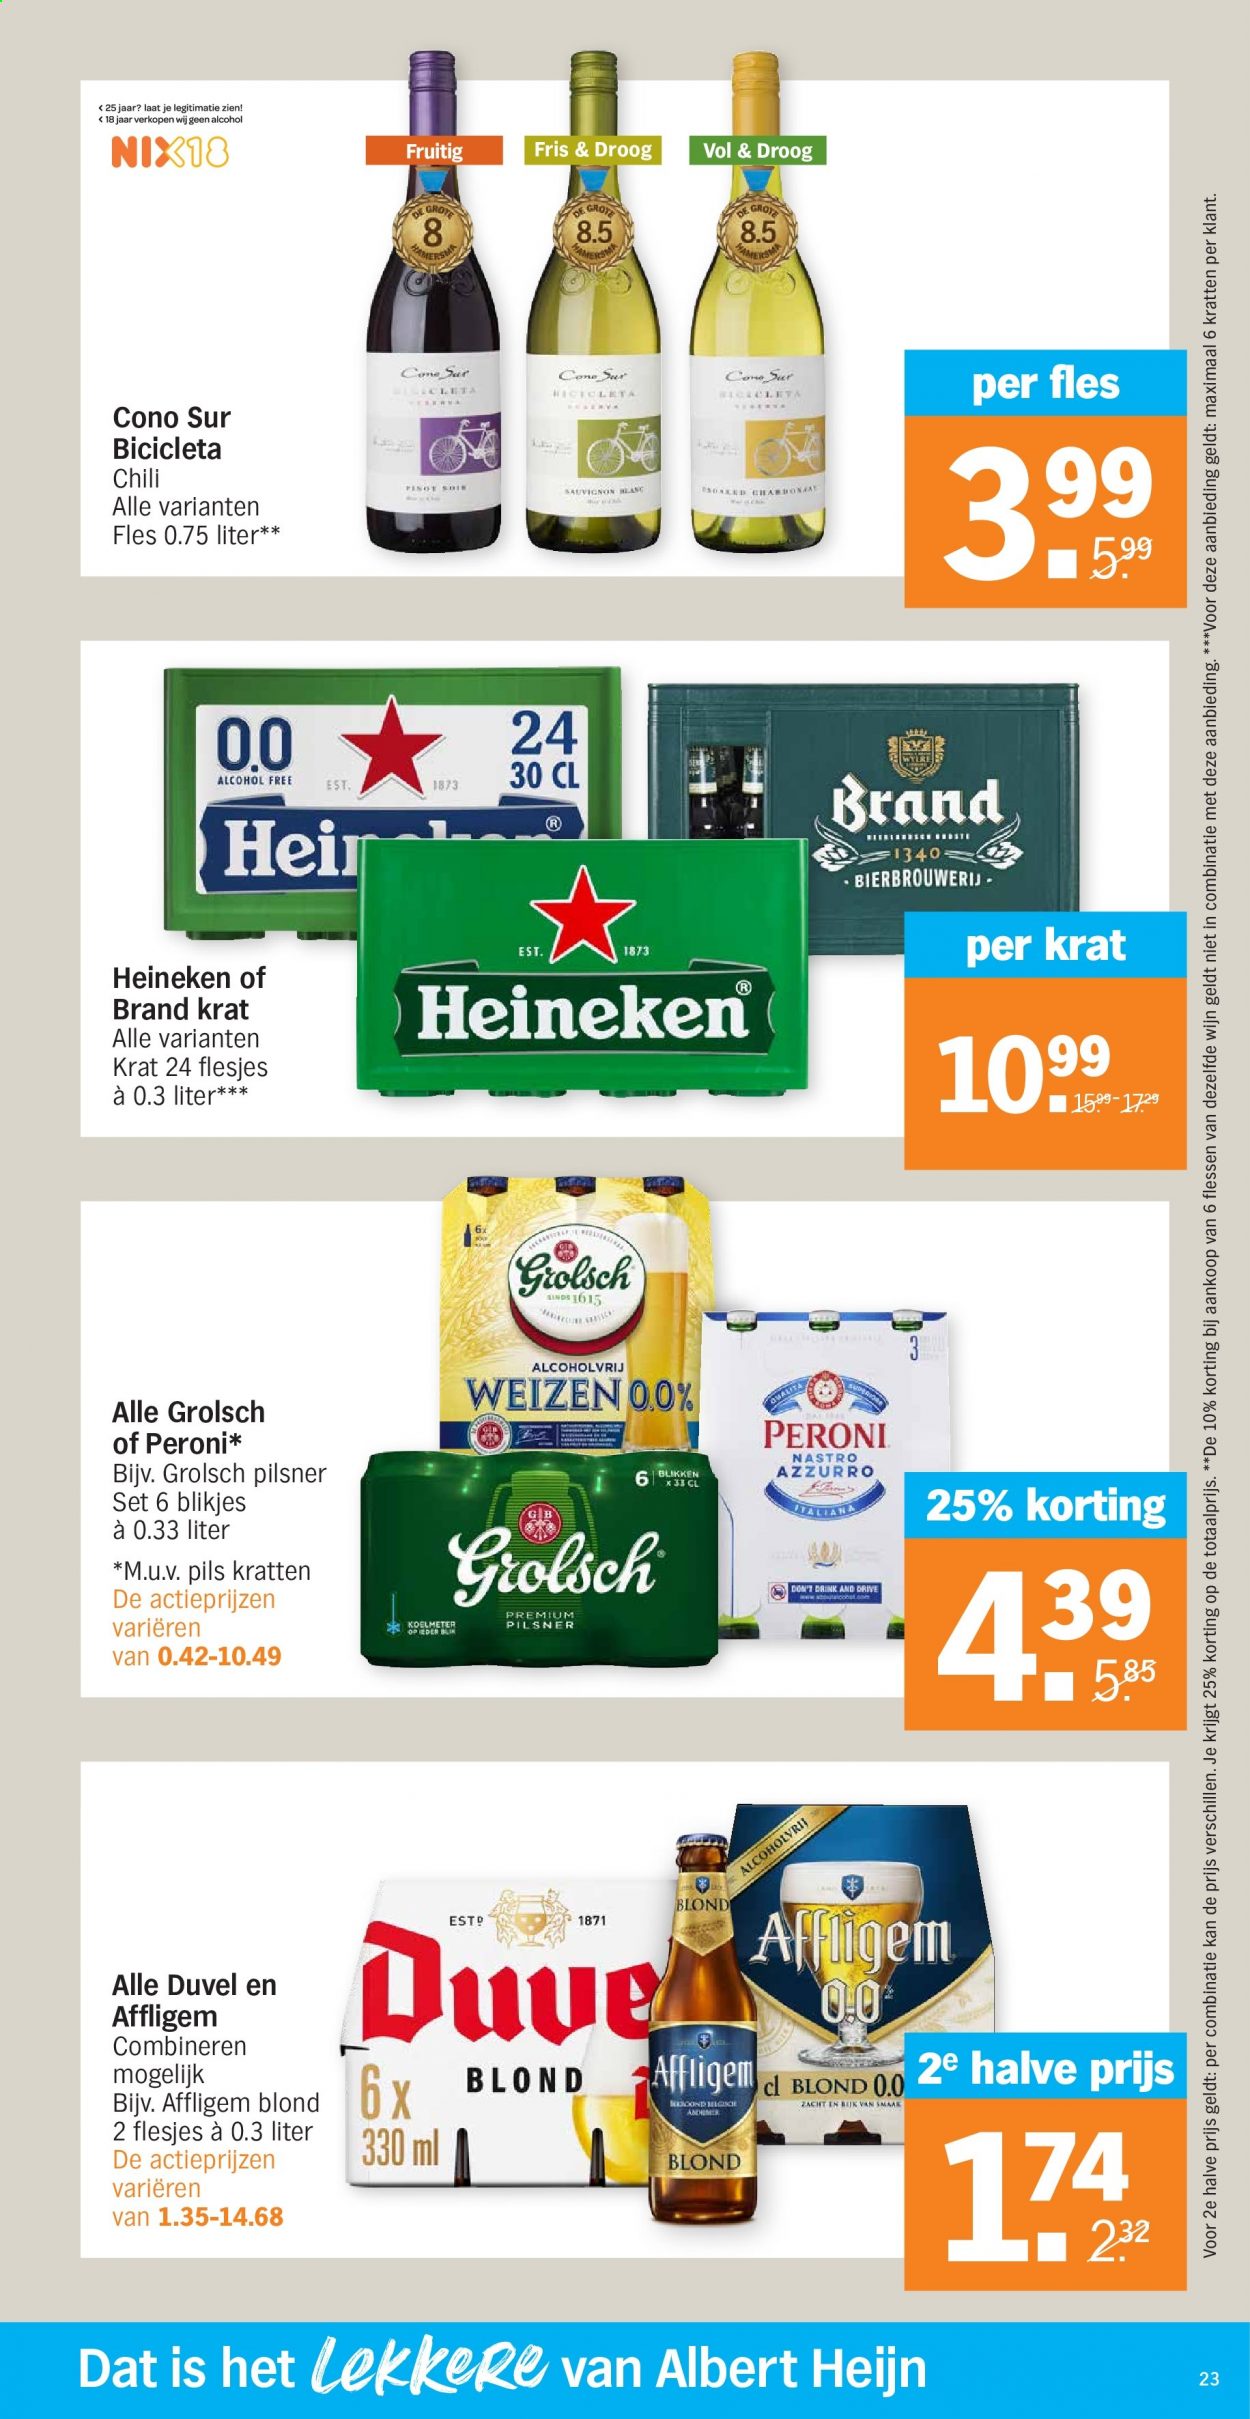 thumbnail - Albert Heijn-aanbieding - 6-4-2021 - 11-4-2021 -  producten in de aanbieding - Affligem, Heineken, Grolsch, wijn. Pagina 23.